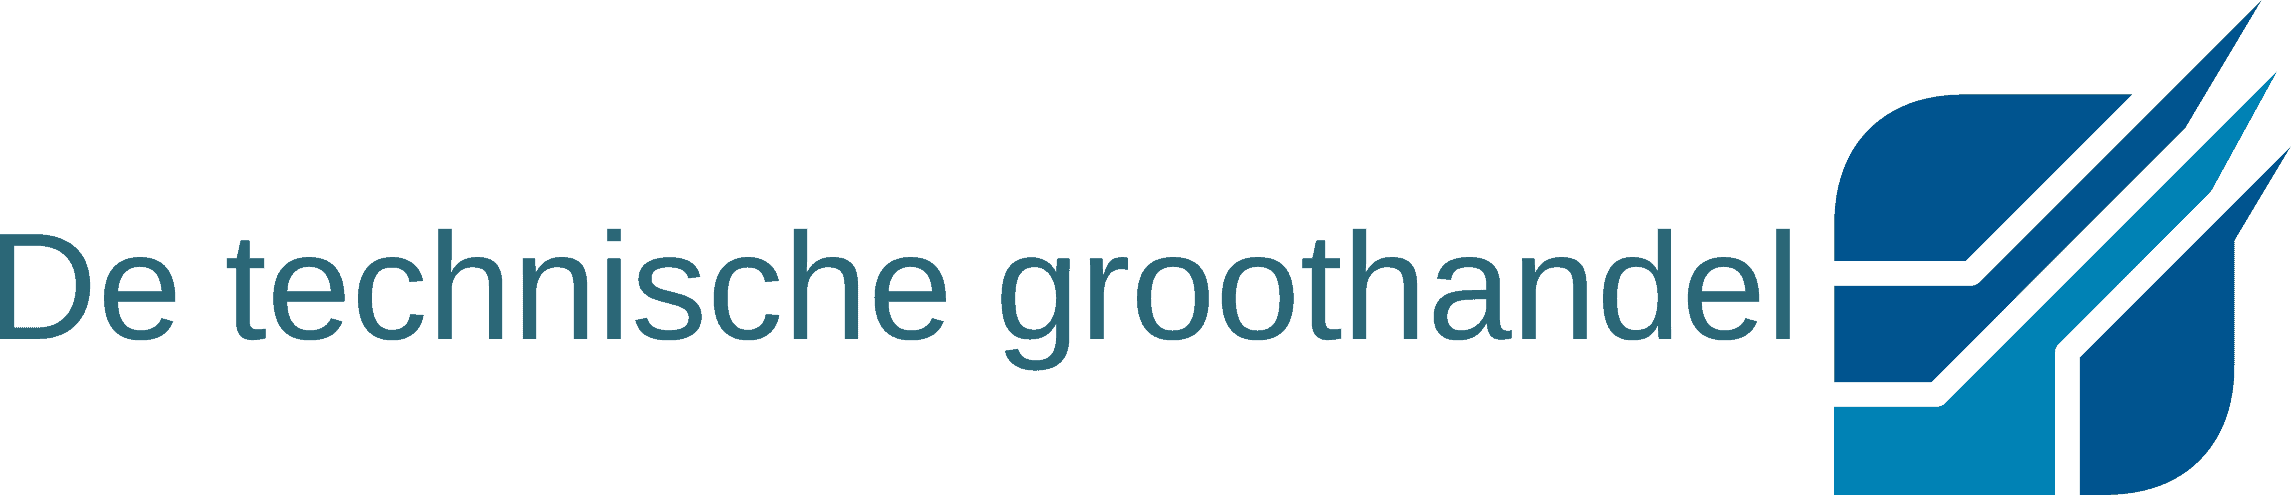 De_Technische_Groothandel_Logo